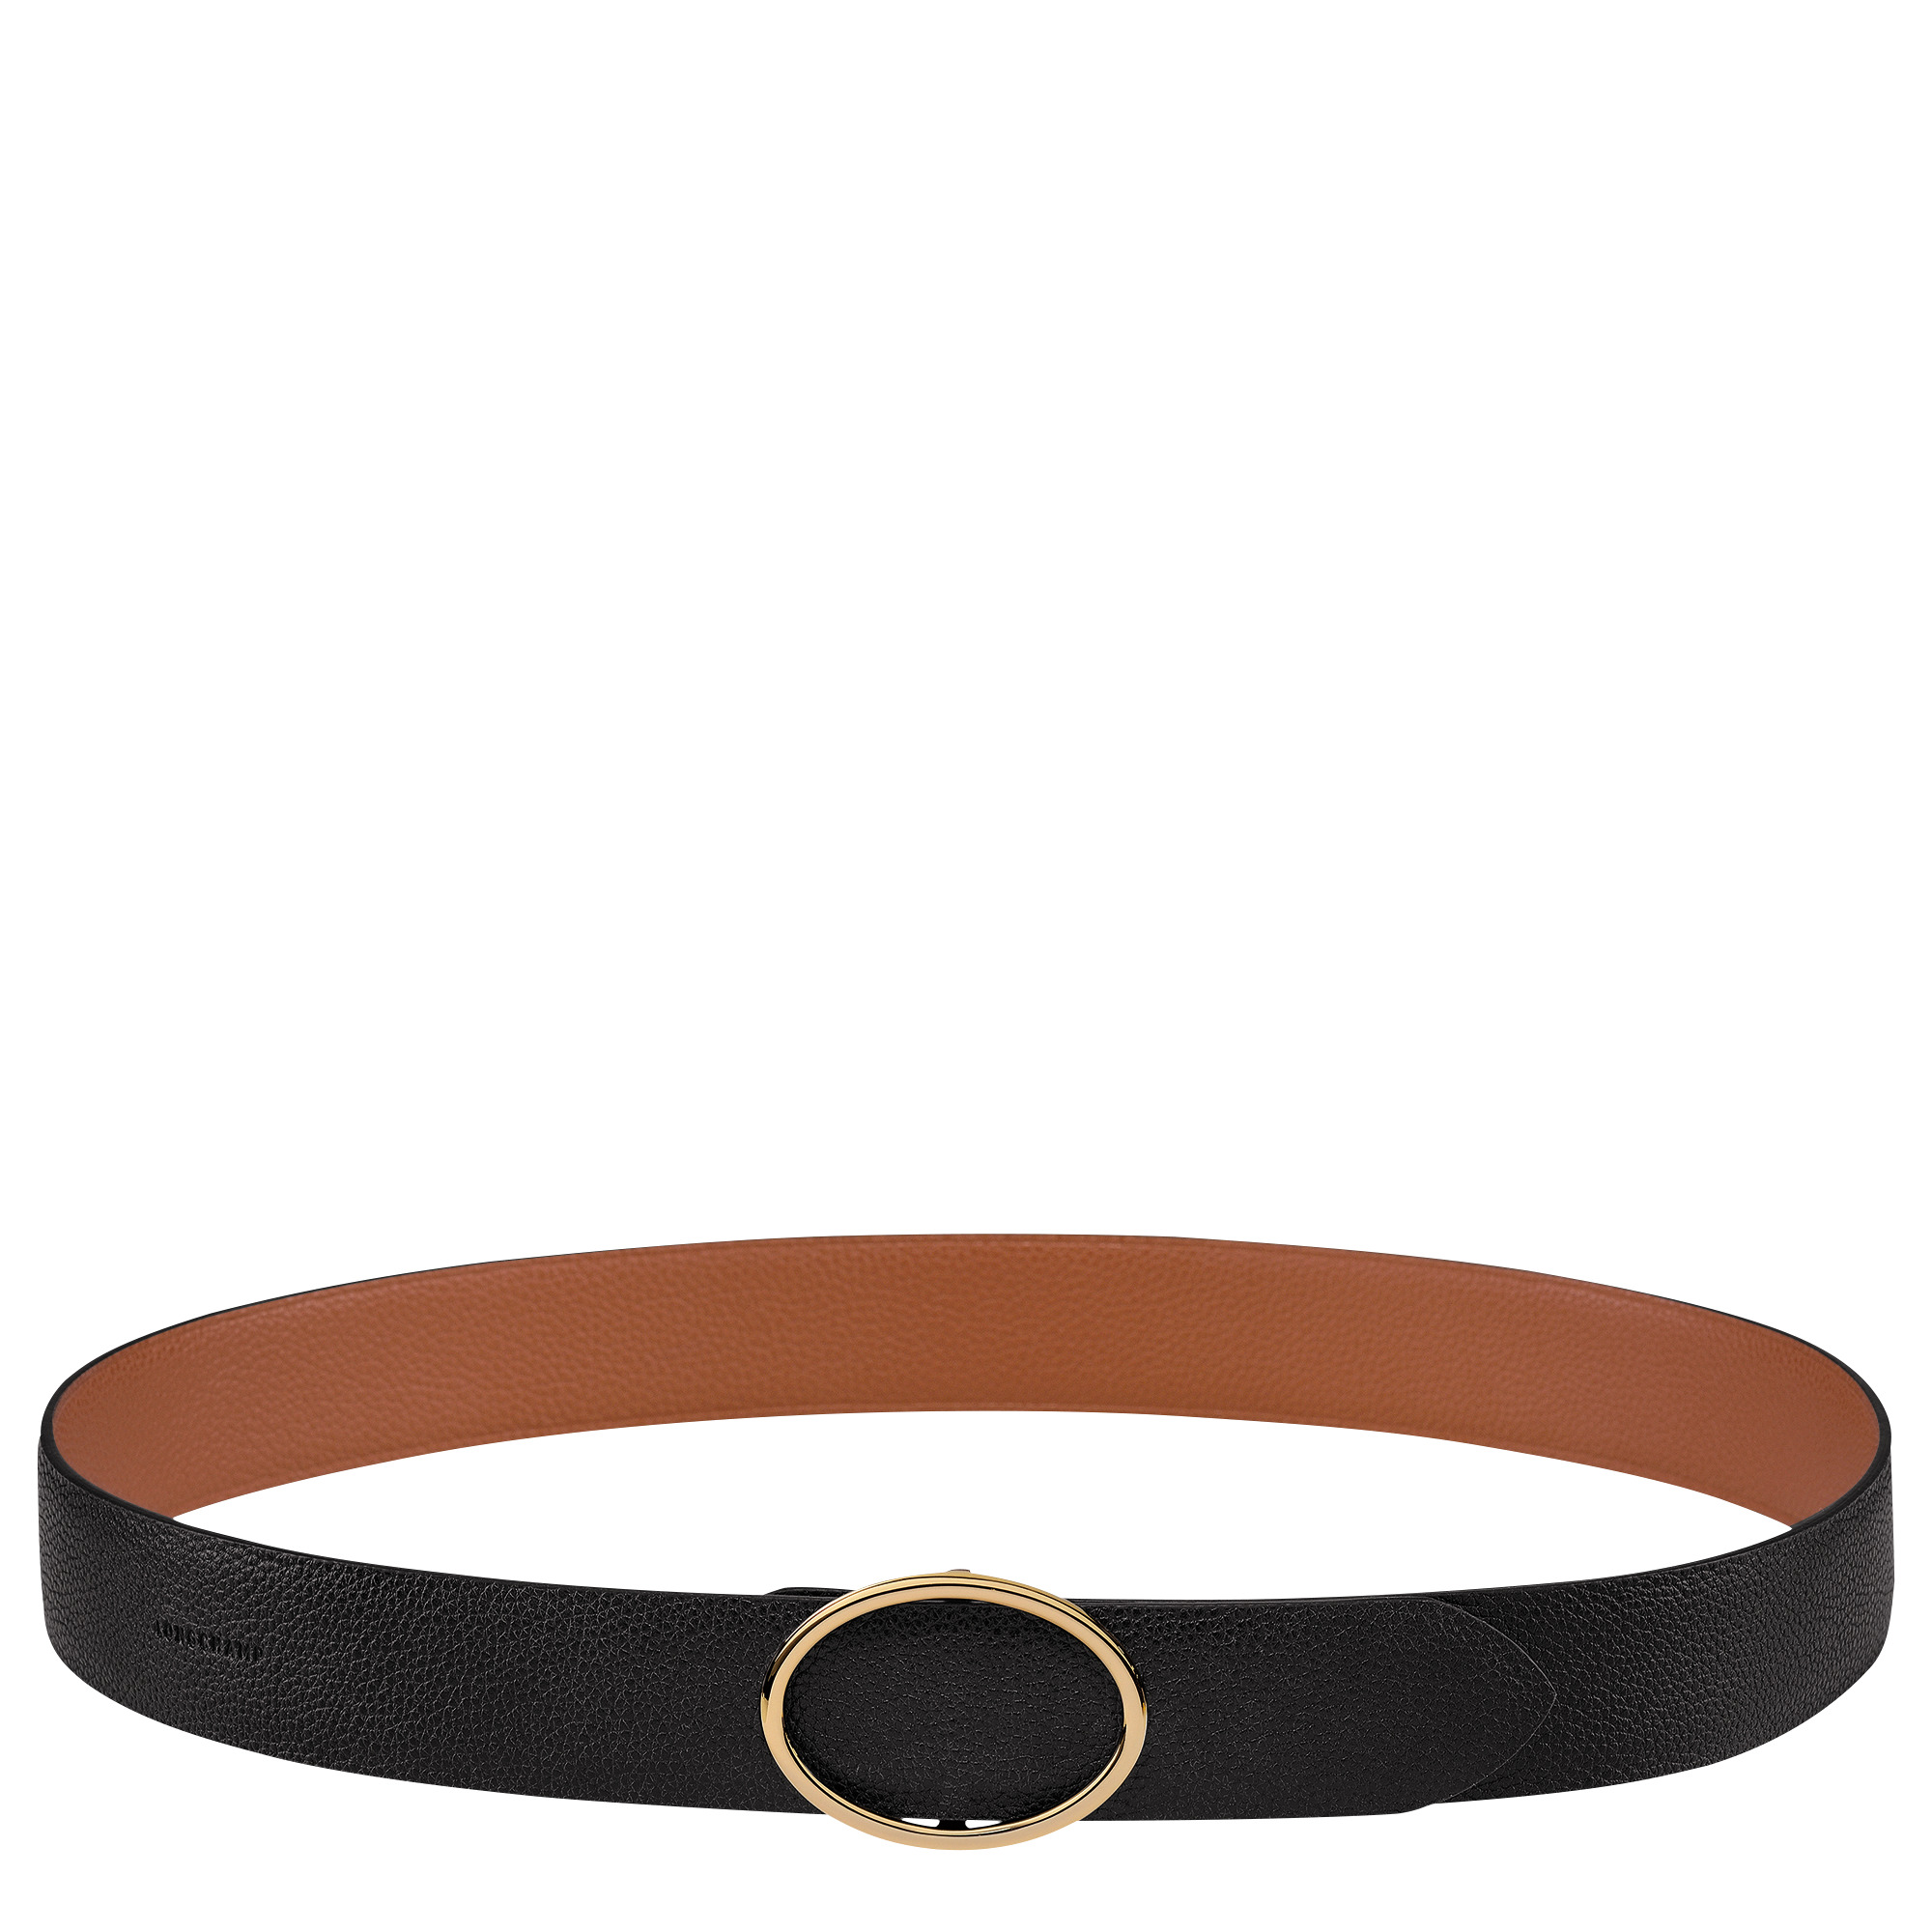 Le Foulonné Ladies' belt Black/Caramel - Leather - 1